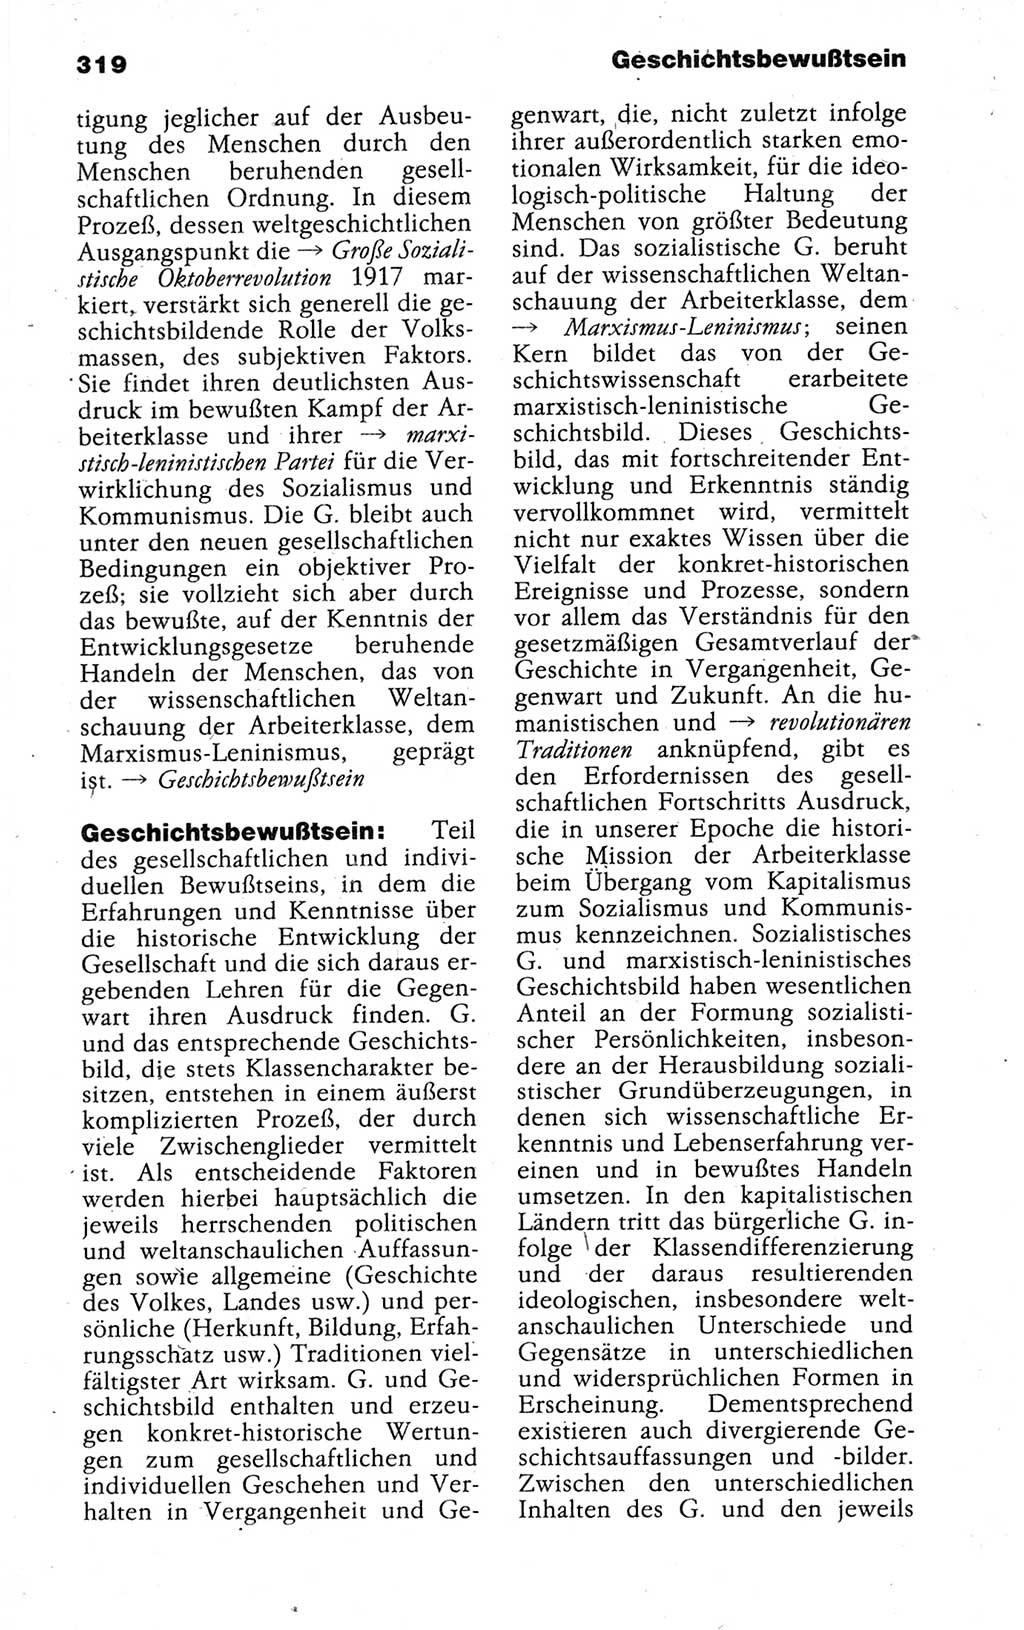 Kleines politisches Wörterbuch [Deutsche Demokratische Republik (DDR)] 1988, Seite 319 (Kl. pol. Wb. DDR 1988, S. 319)